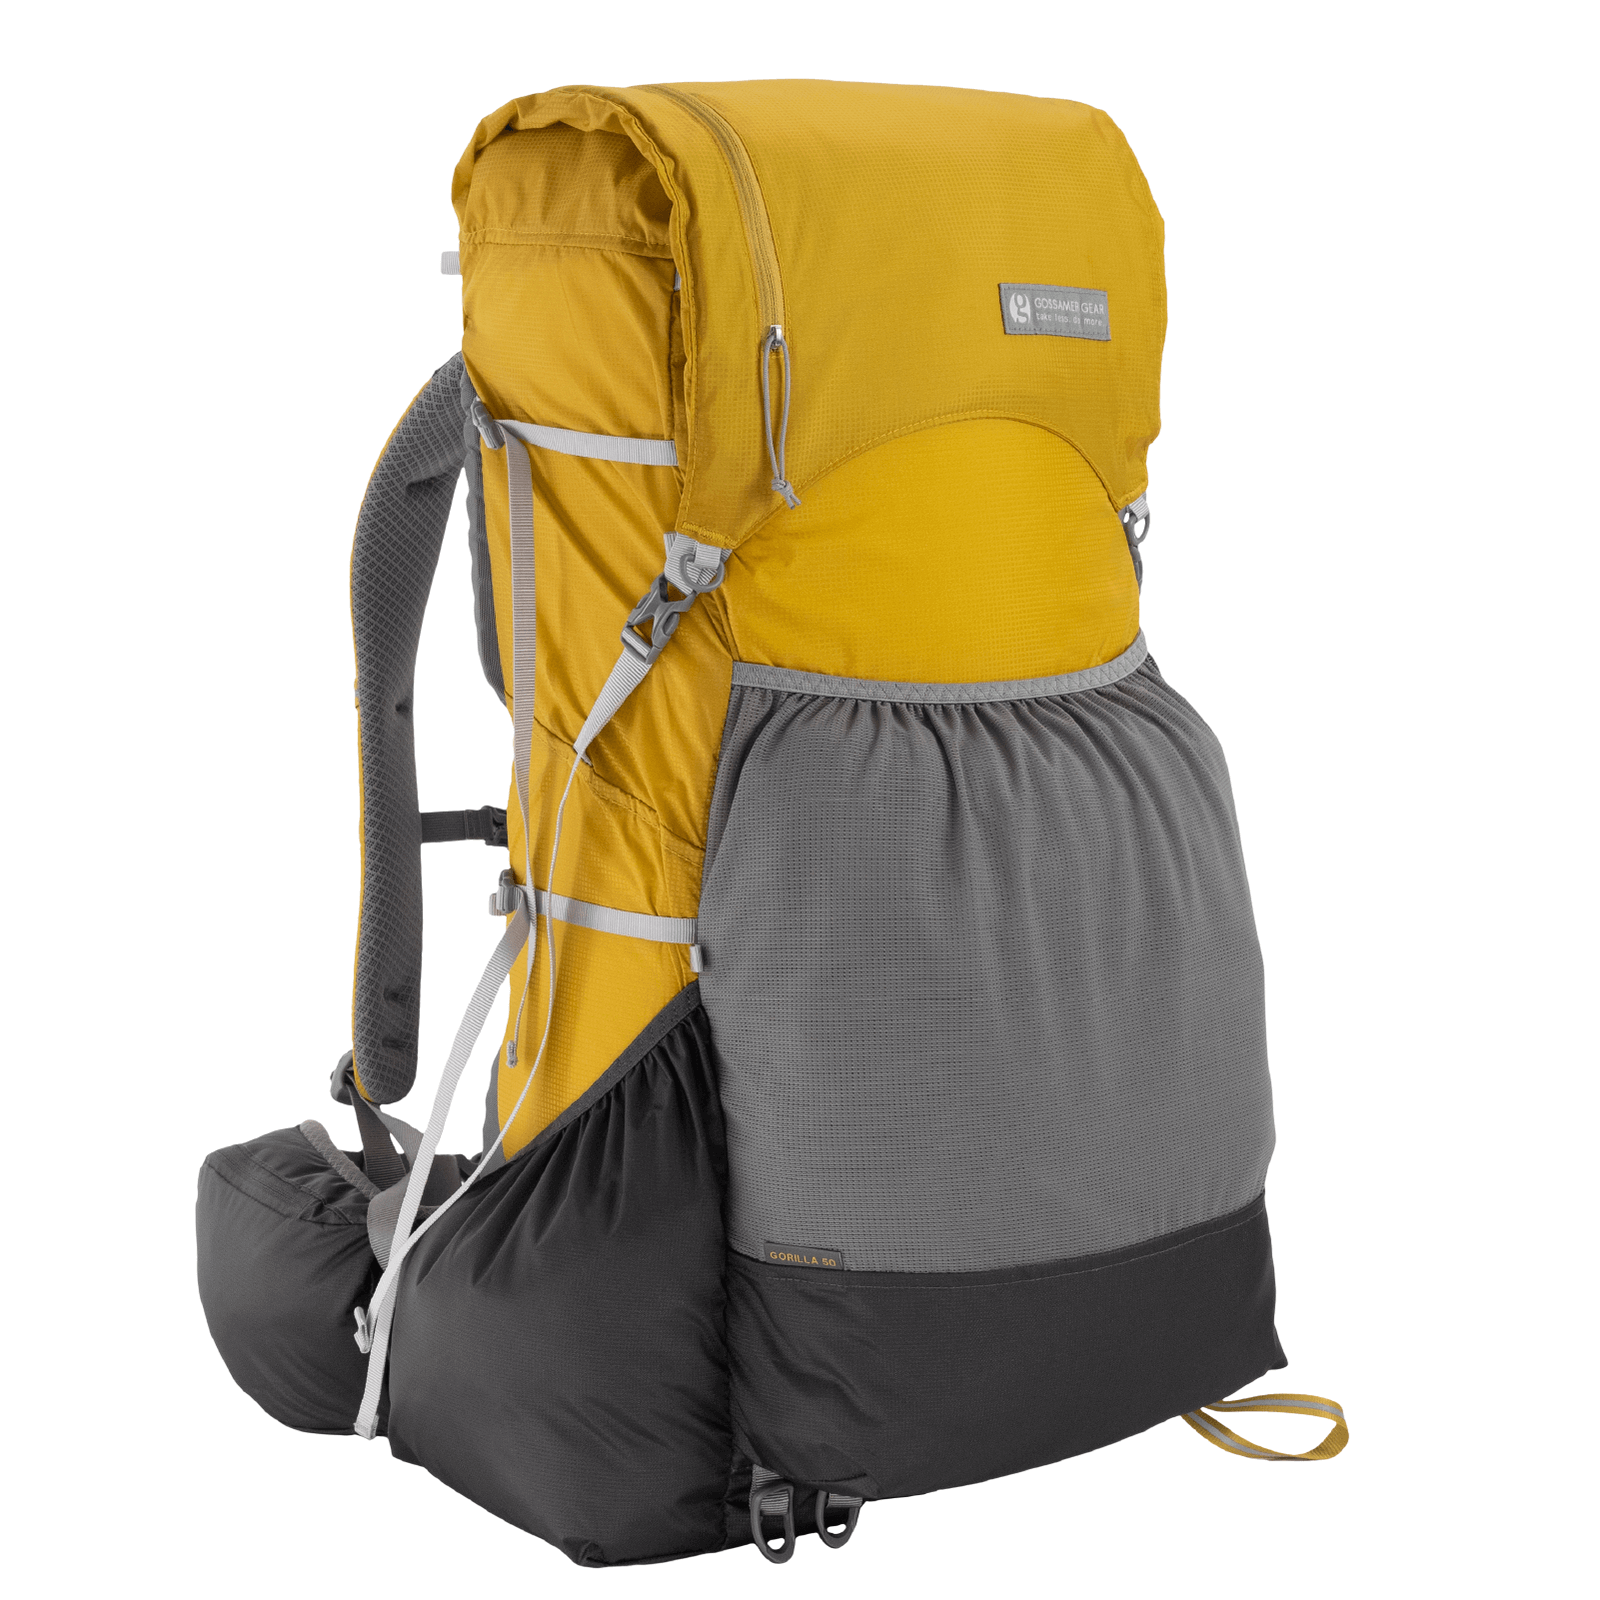 Gorilla 50 Ultralight Backpack